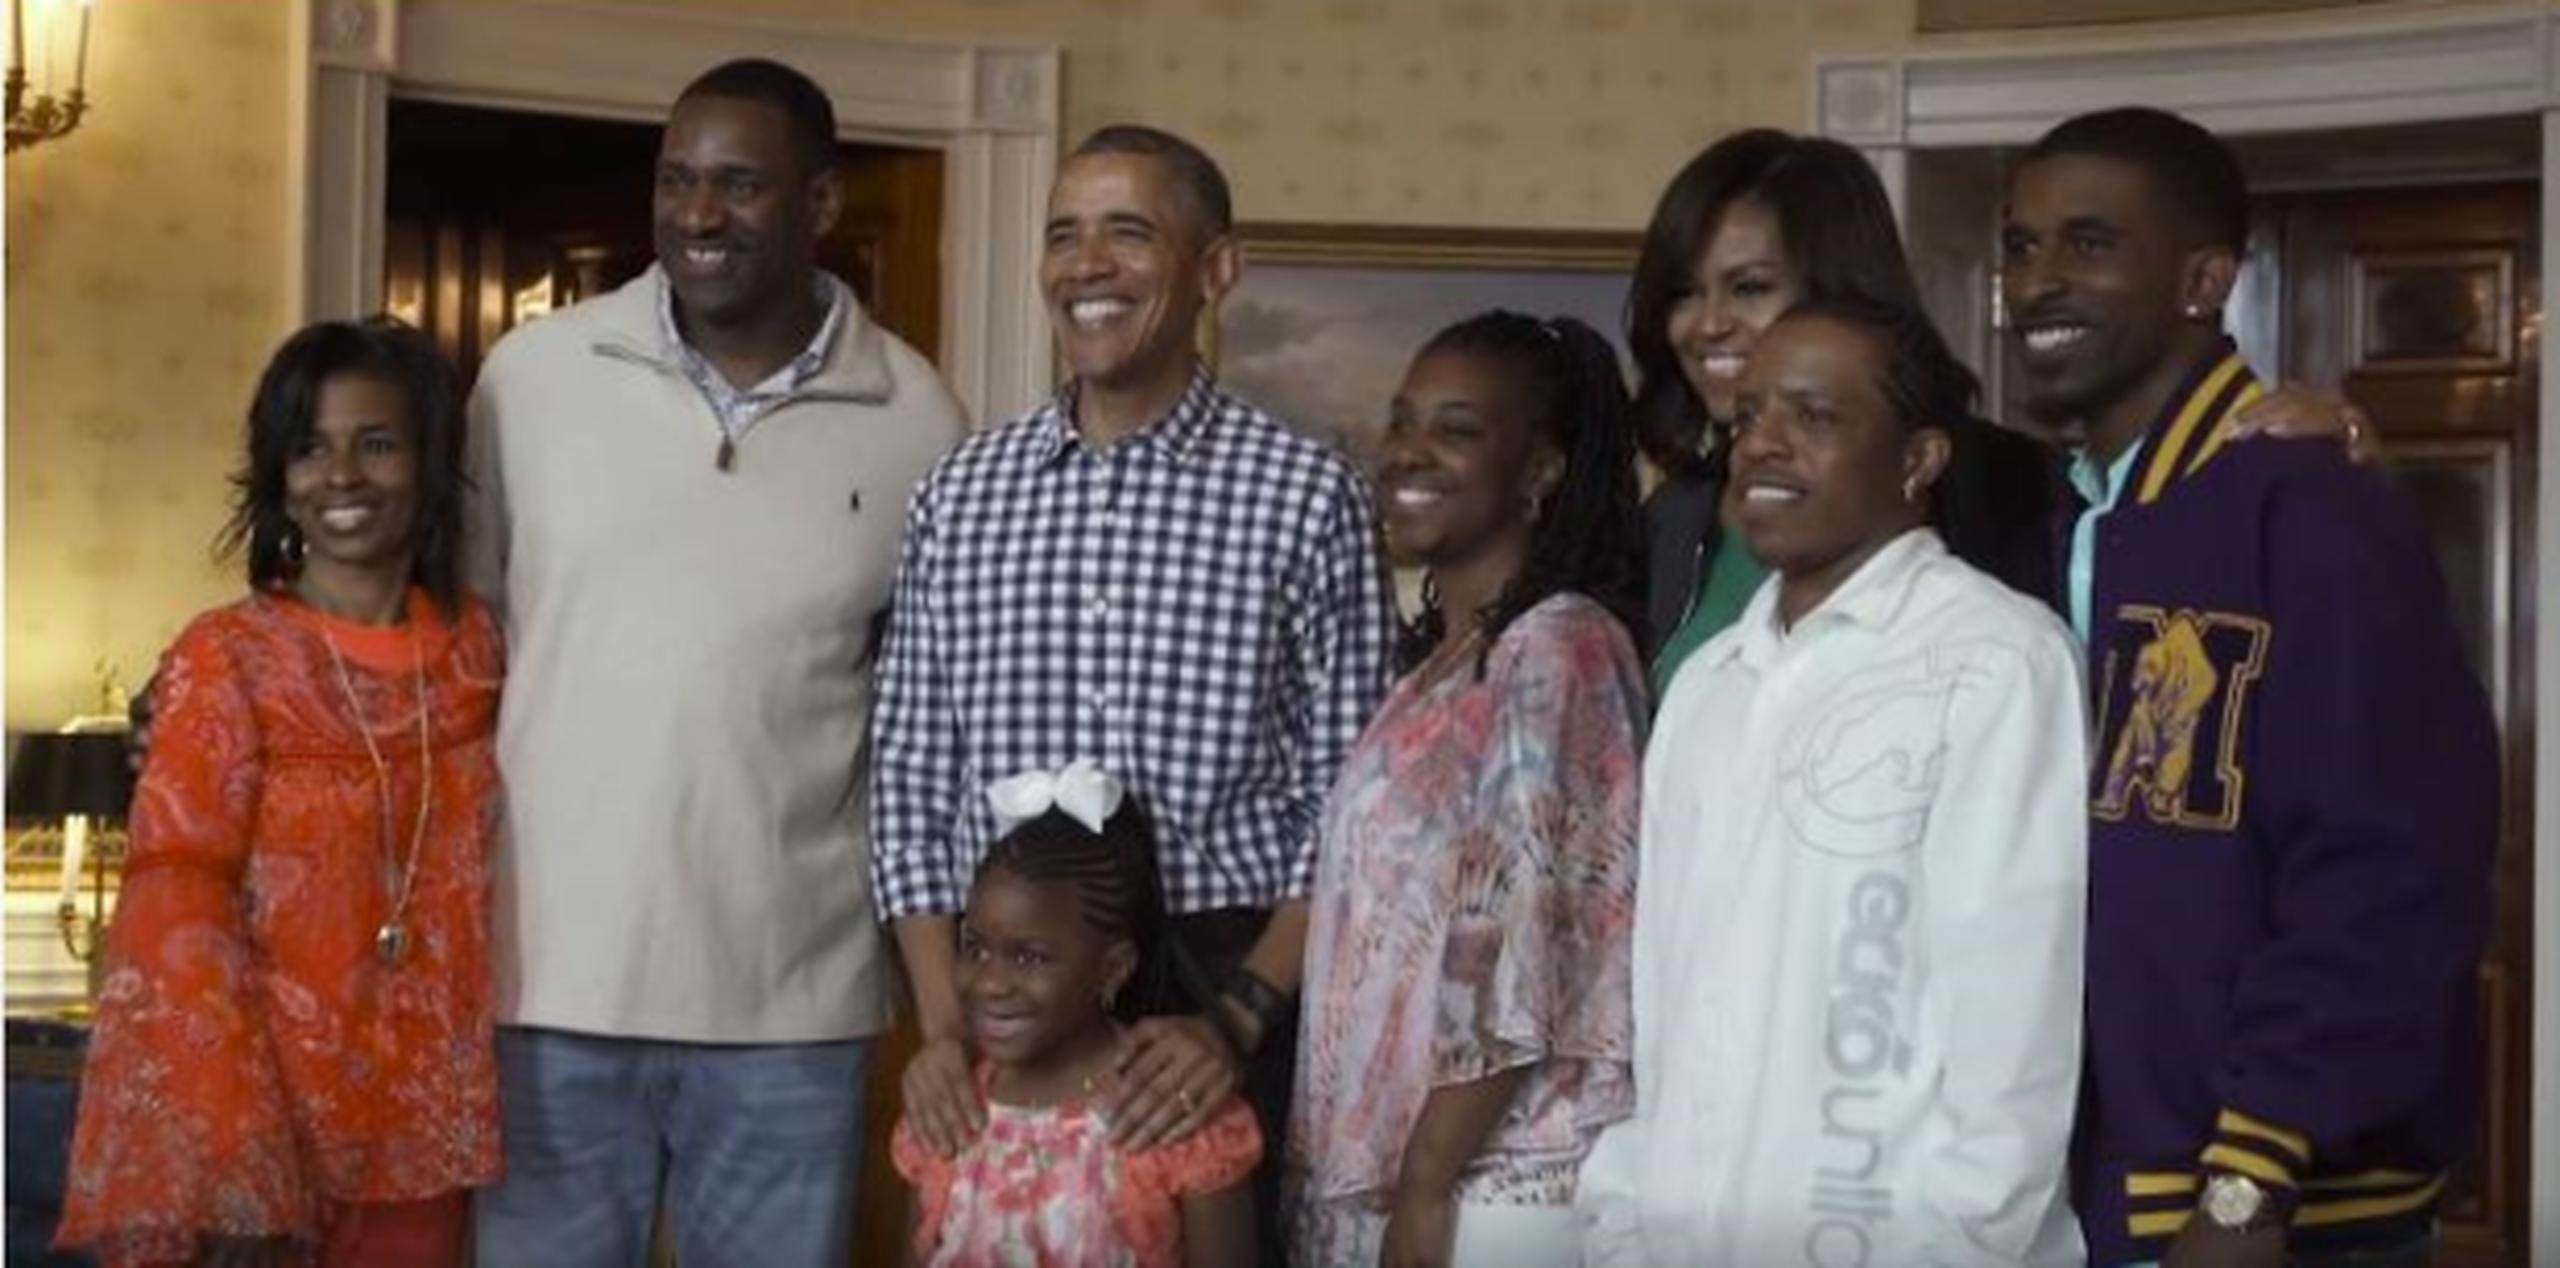 La pequeña Kameria le pidió al presidente Obama en una carta que le permitiera conocerlo antes que dejara la Casa Blanca, y el presidente cumplió su deseo. (Captura)